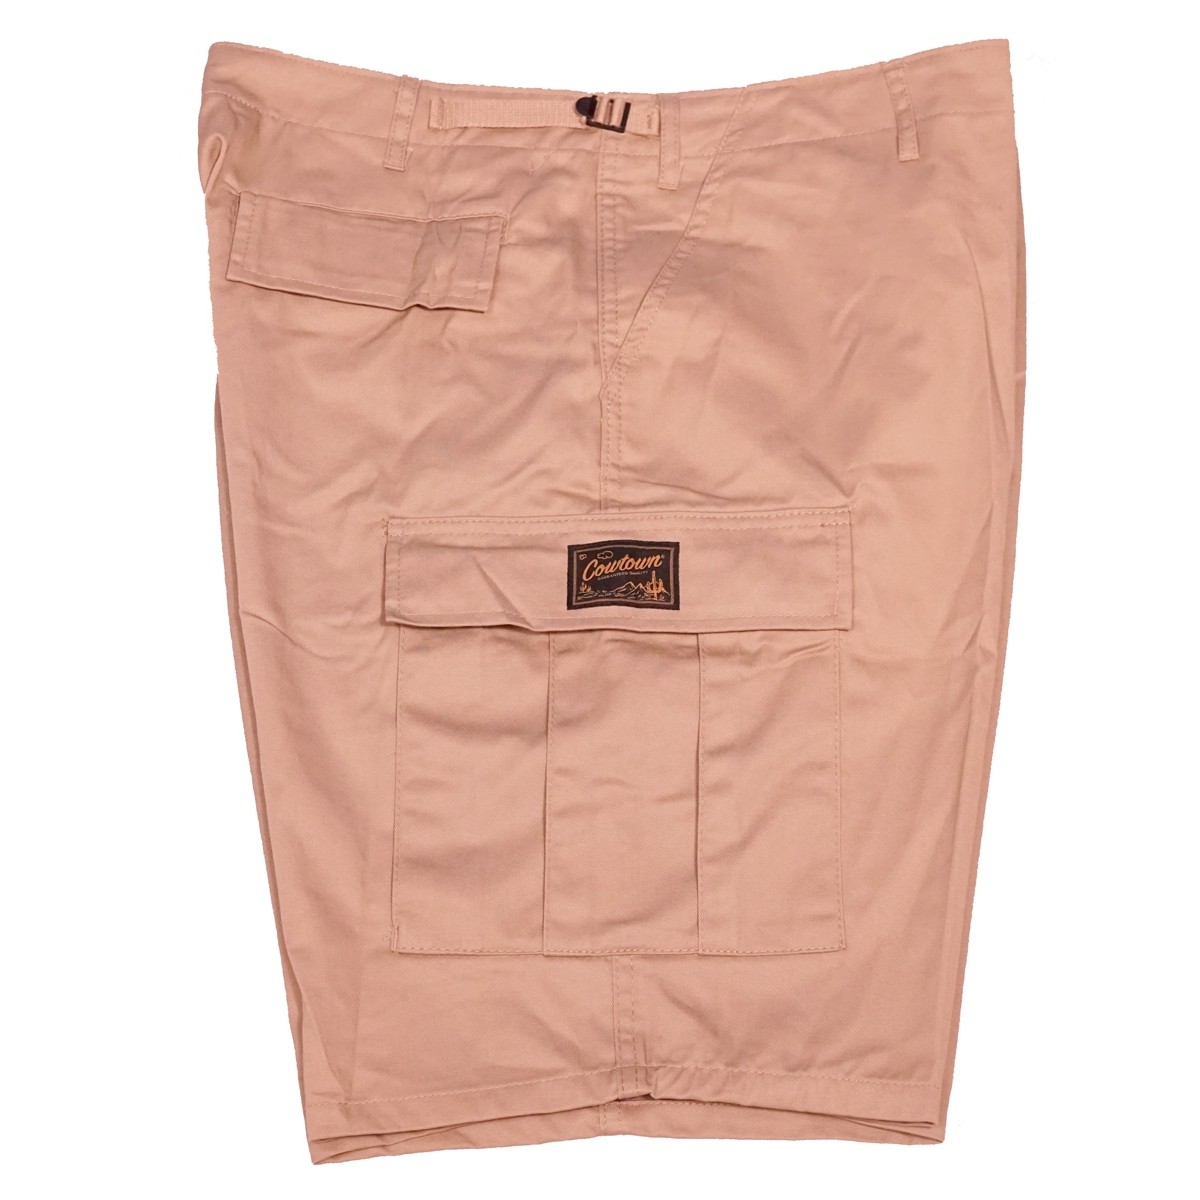 Guaranteed Quality Cargo Shorts (Khaki)